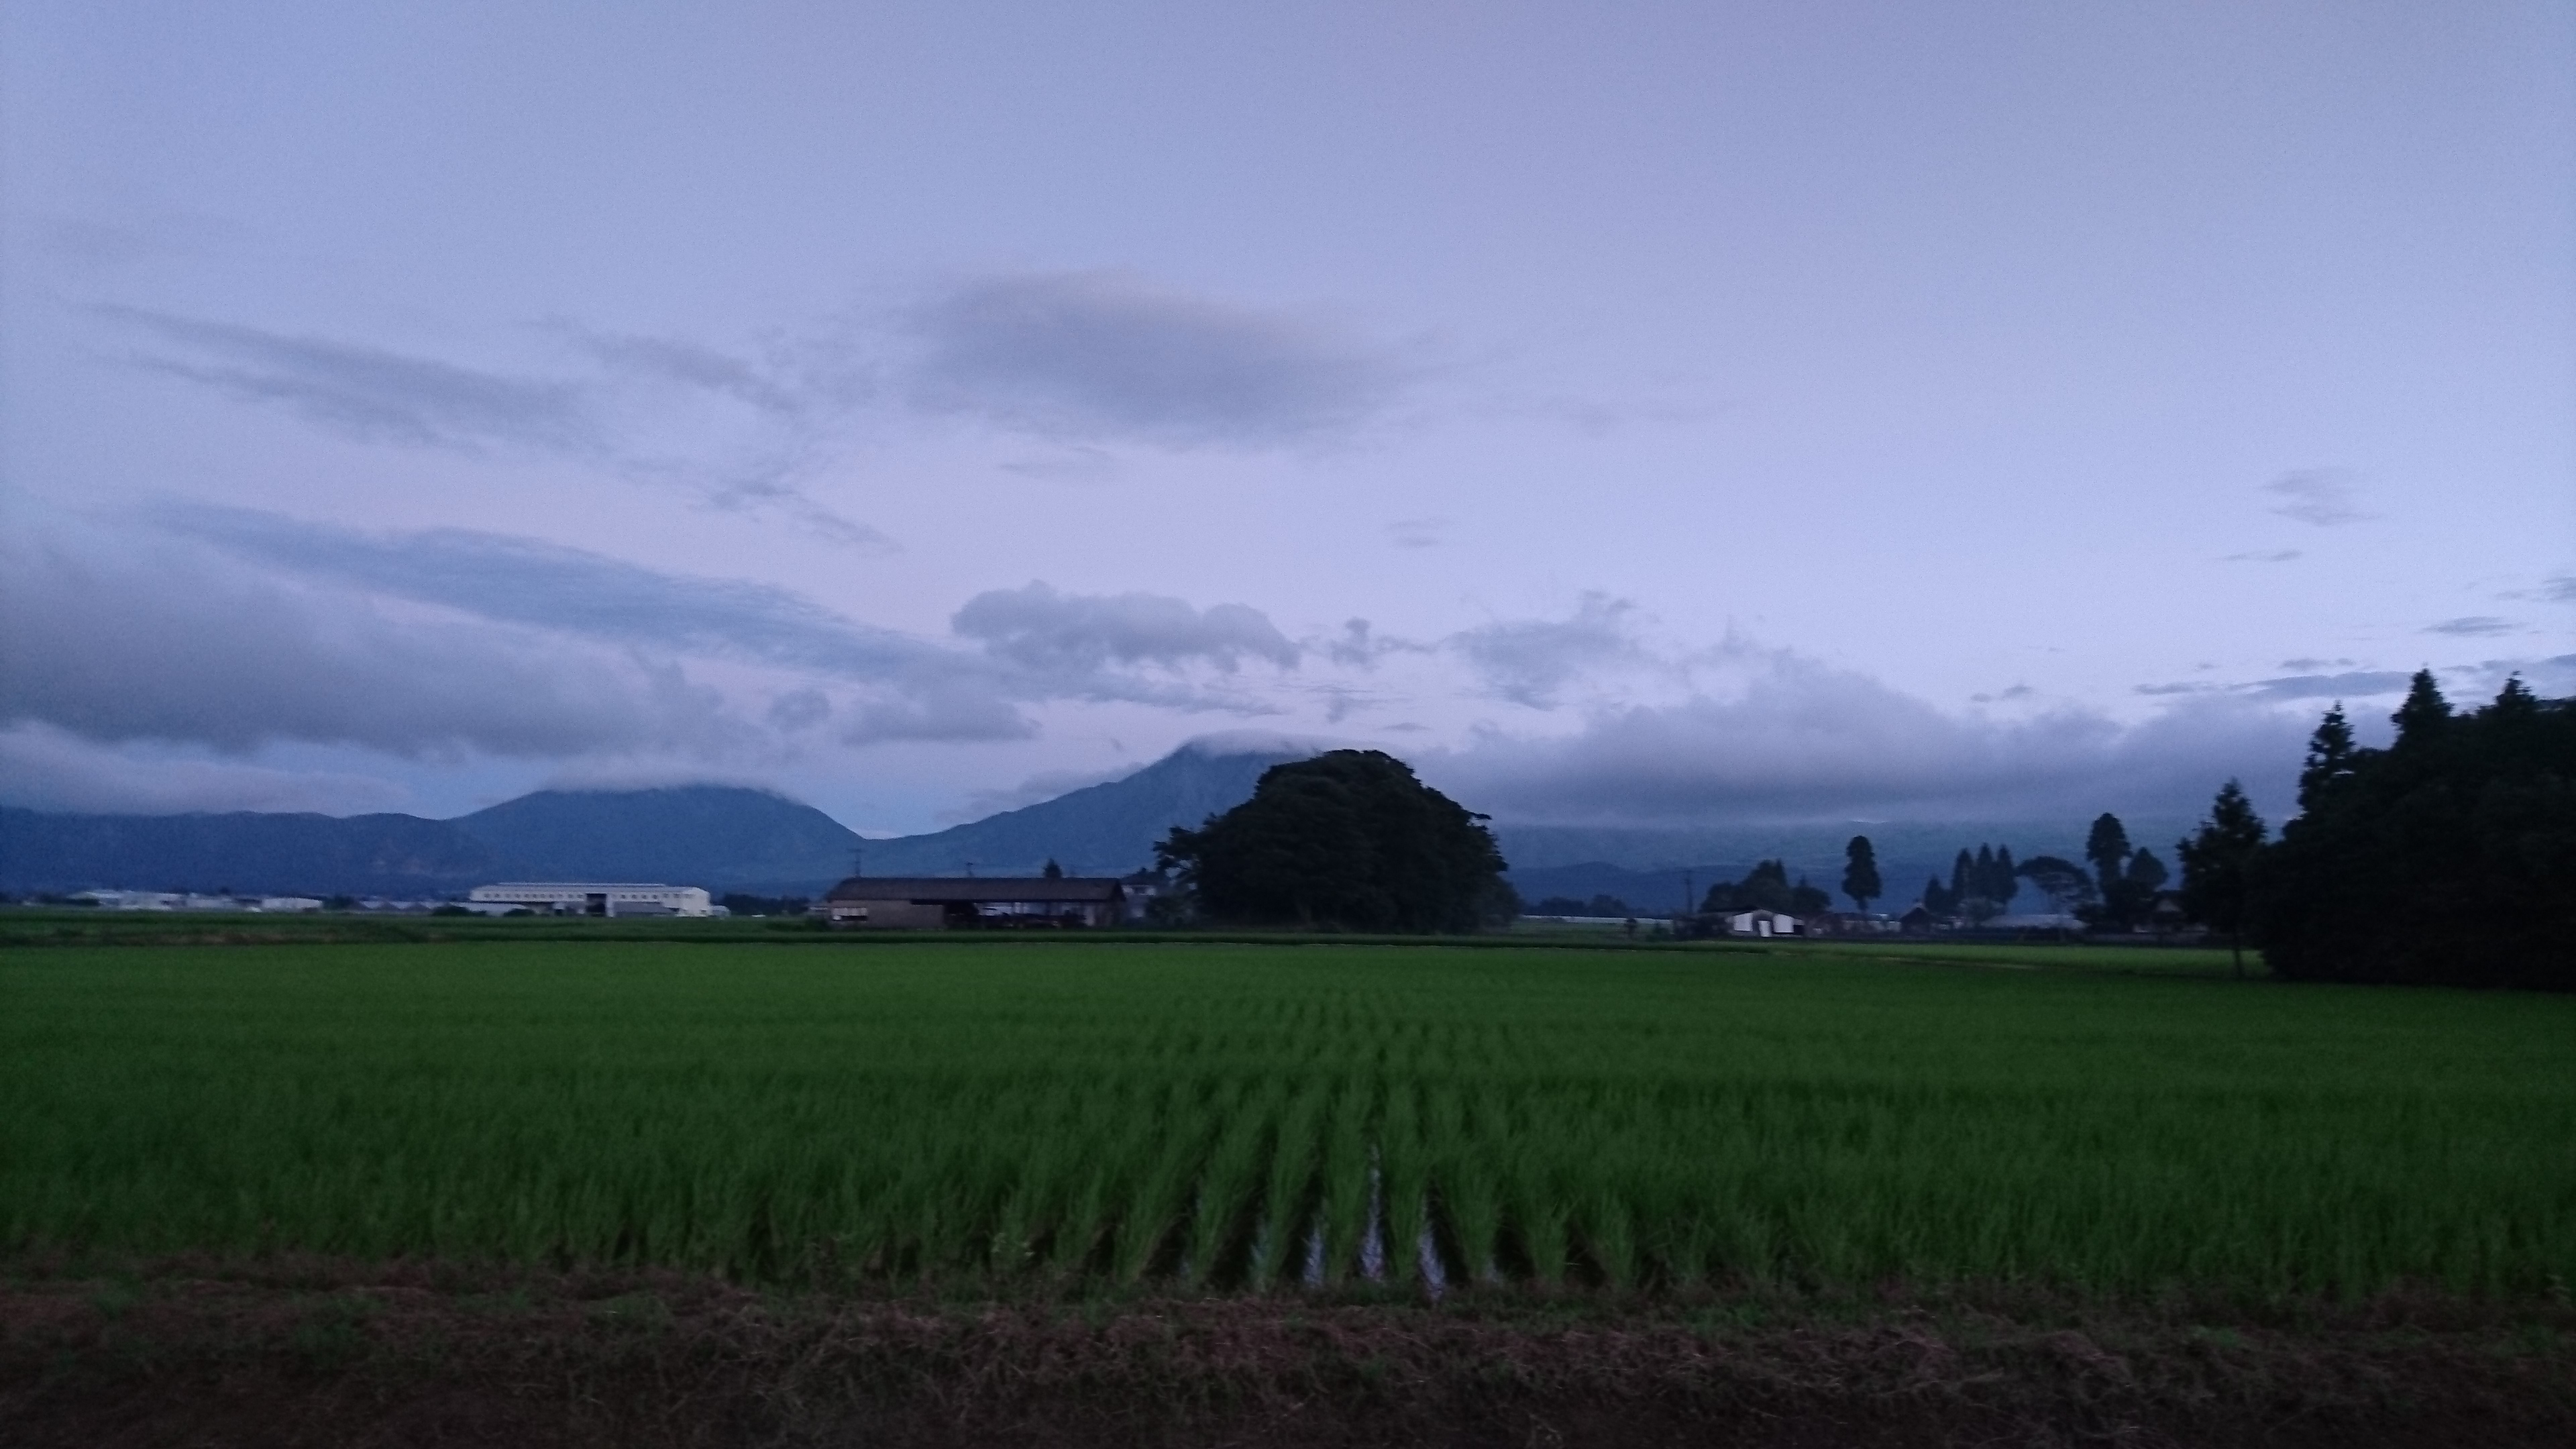 水田と阿蘇五岳の写真